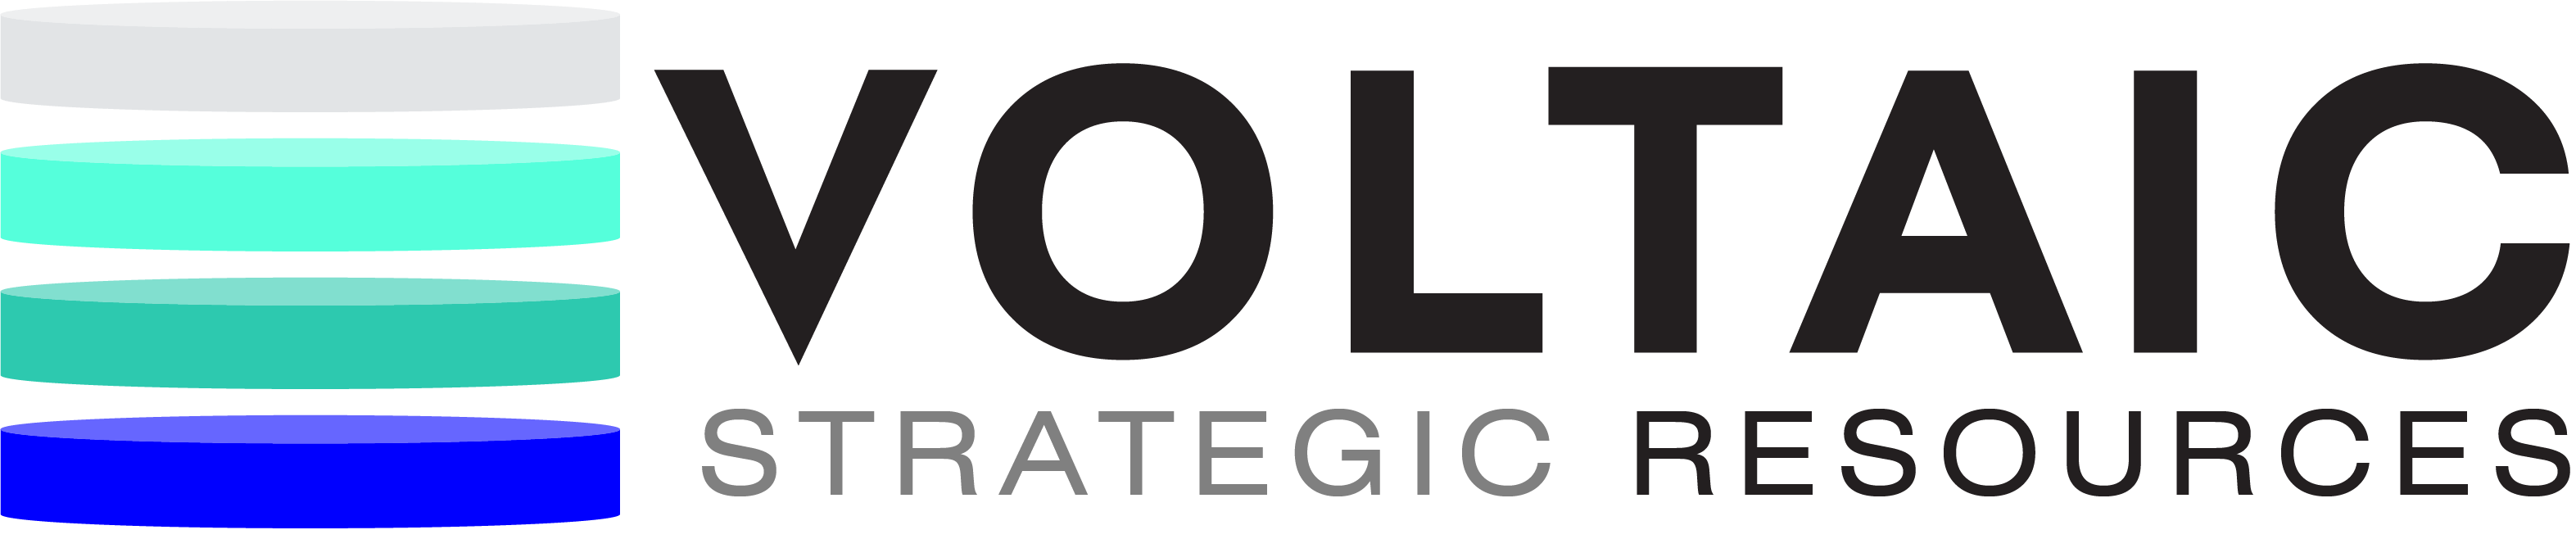 Voltaic Strategic Resources – VSR